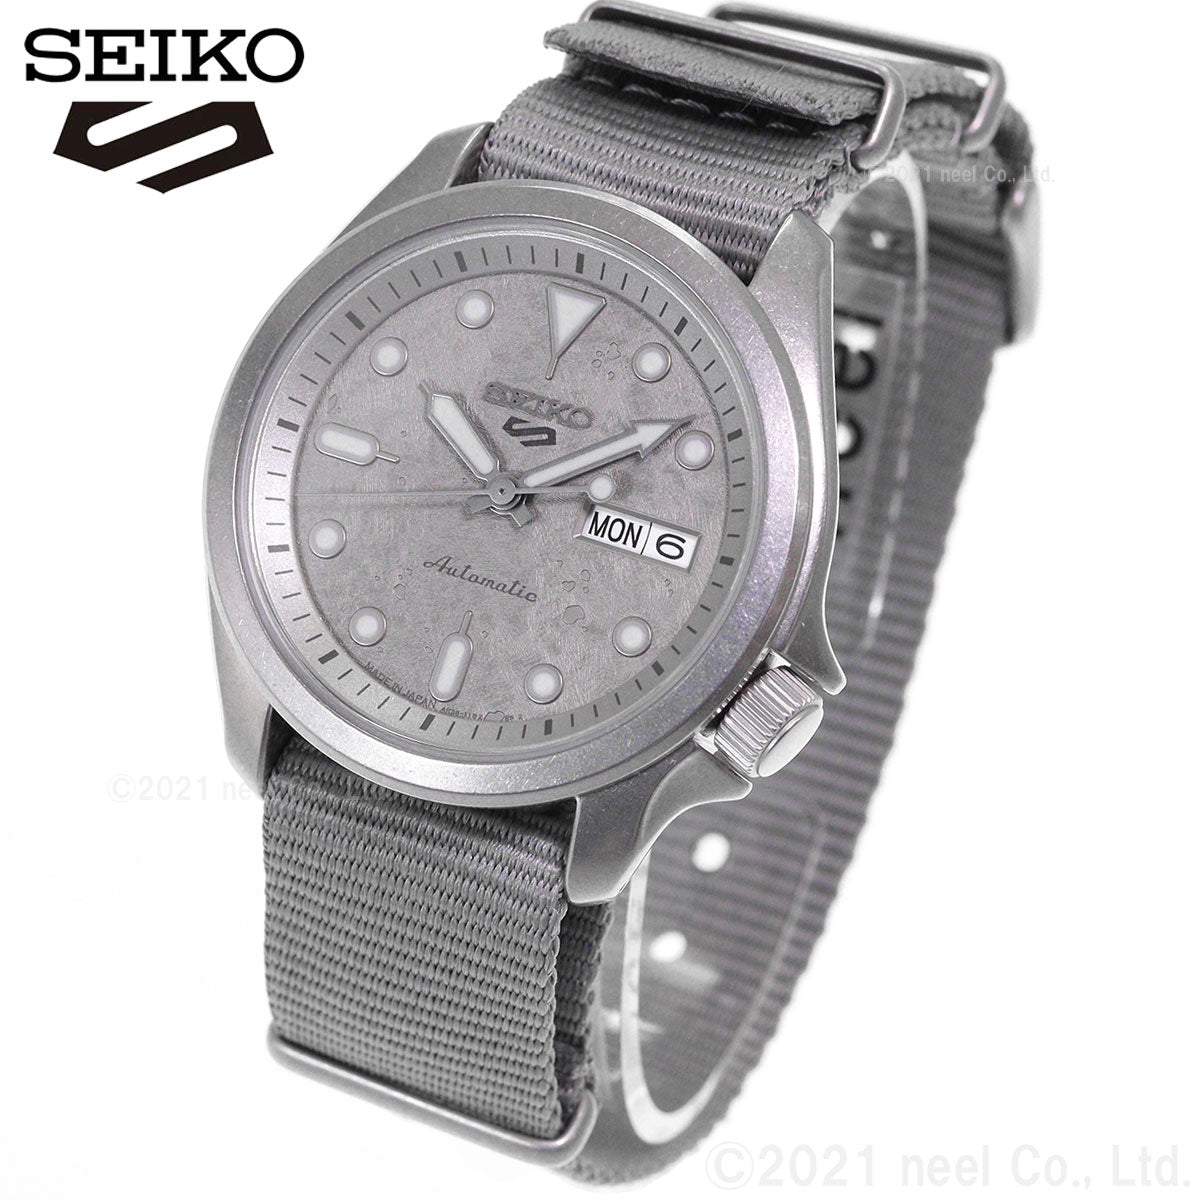 セイコー5 スポーツ SEIKO 5 SPORTS 自動巻き メカニカル 流通限定モデル 腕時計 メンズ ストリート スタイル Street Style SBSA129